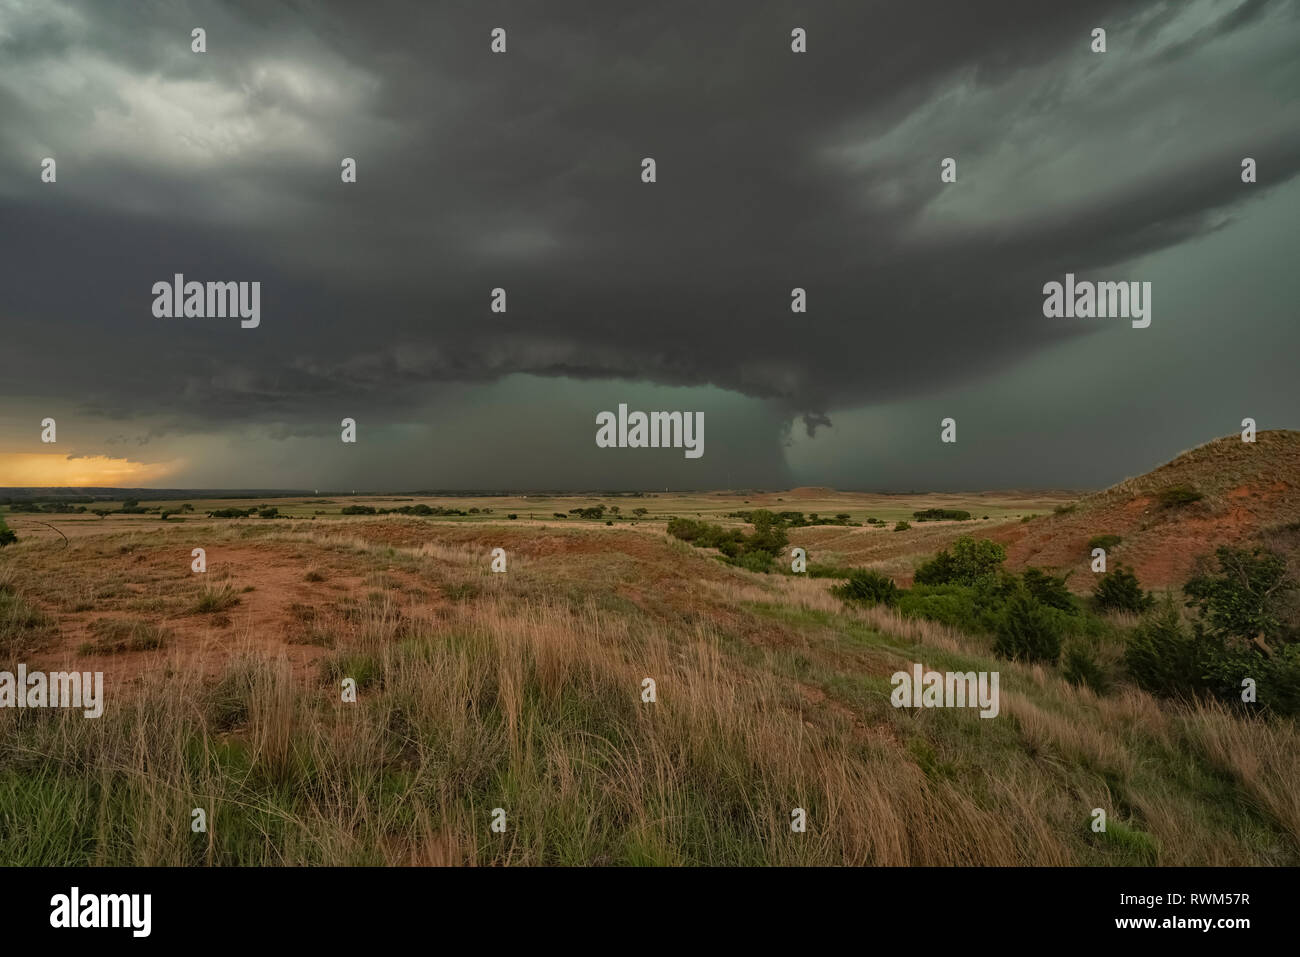 Dramatische Himmel über der Landschaft während eines Sturms jagen Tour im mittleren Westen der Vereinigten Staaten gesehen, Kansas, Vereinigte Staaten von Amerika Stockfoto